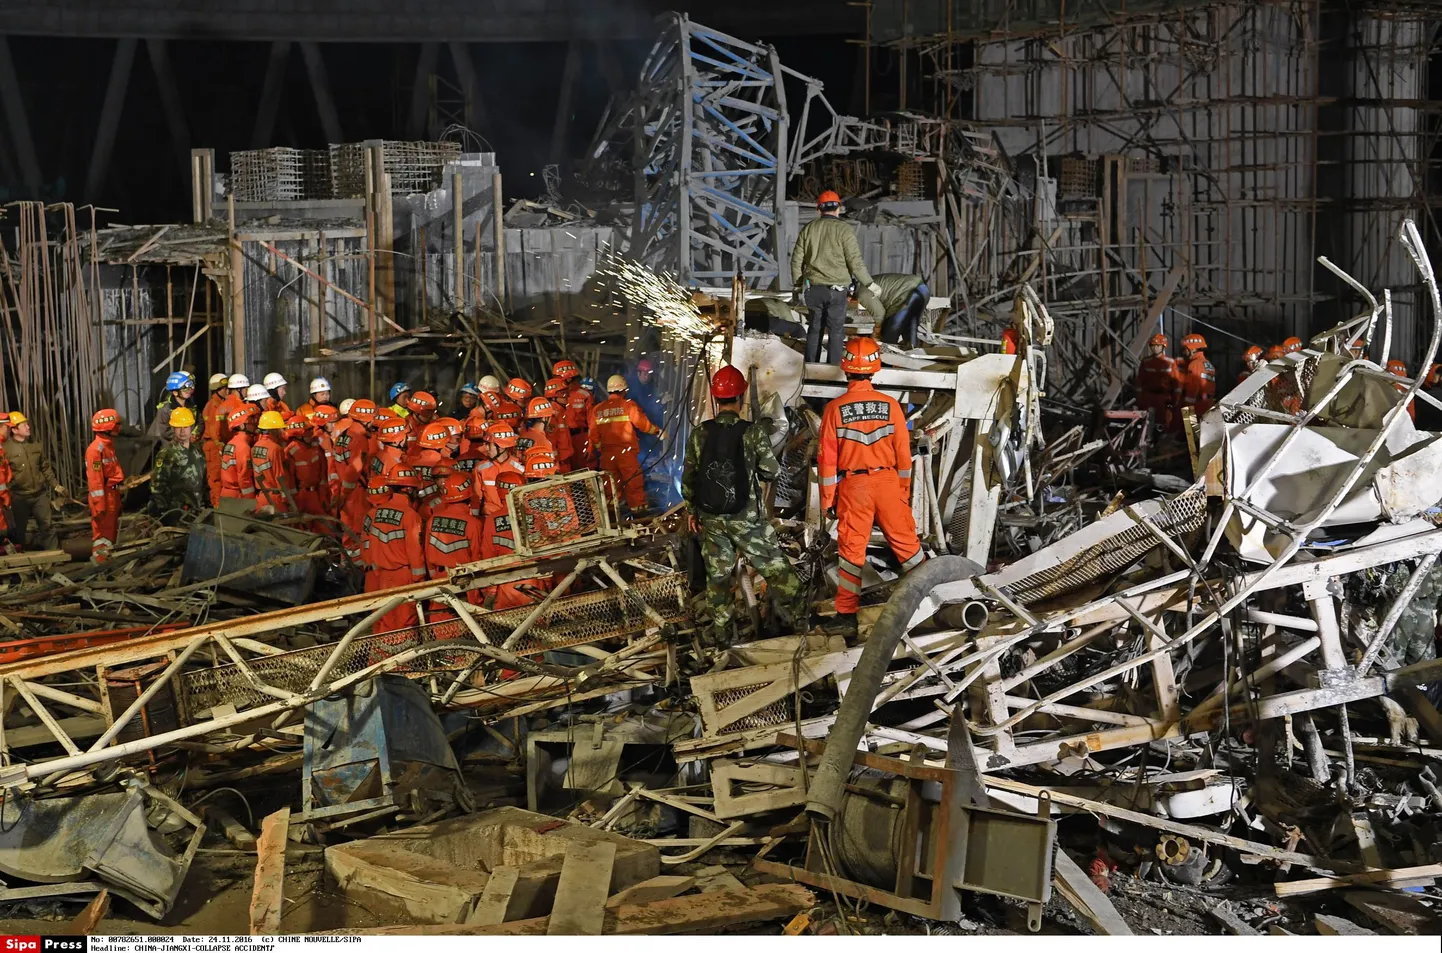 Ehitustööde käigus kokku varisenud kraana Hiinas. Õnnetuses hukkus 67 inimest.